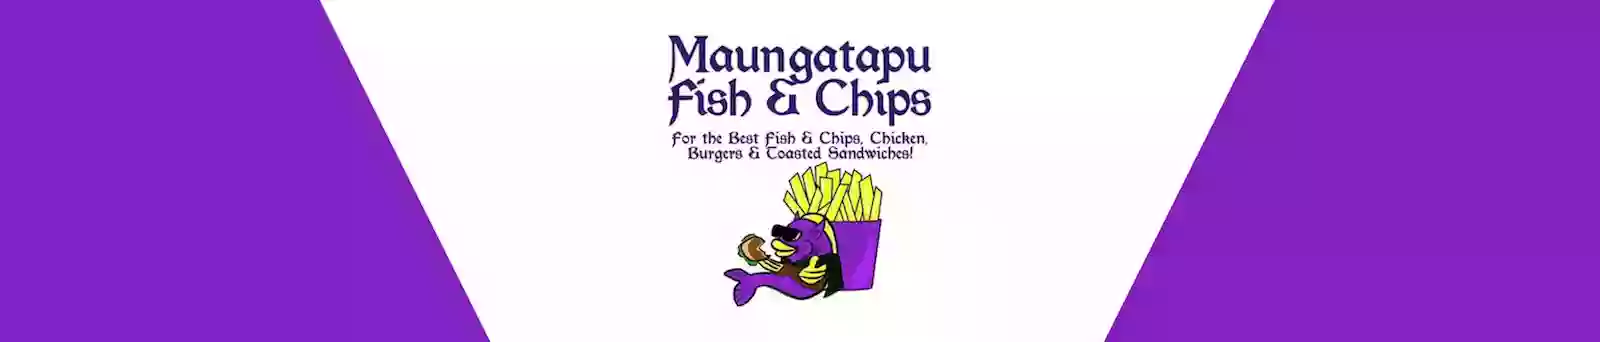 Maungatapu Fish & Chips